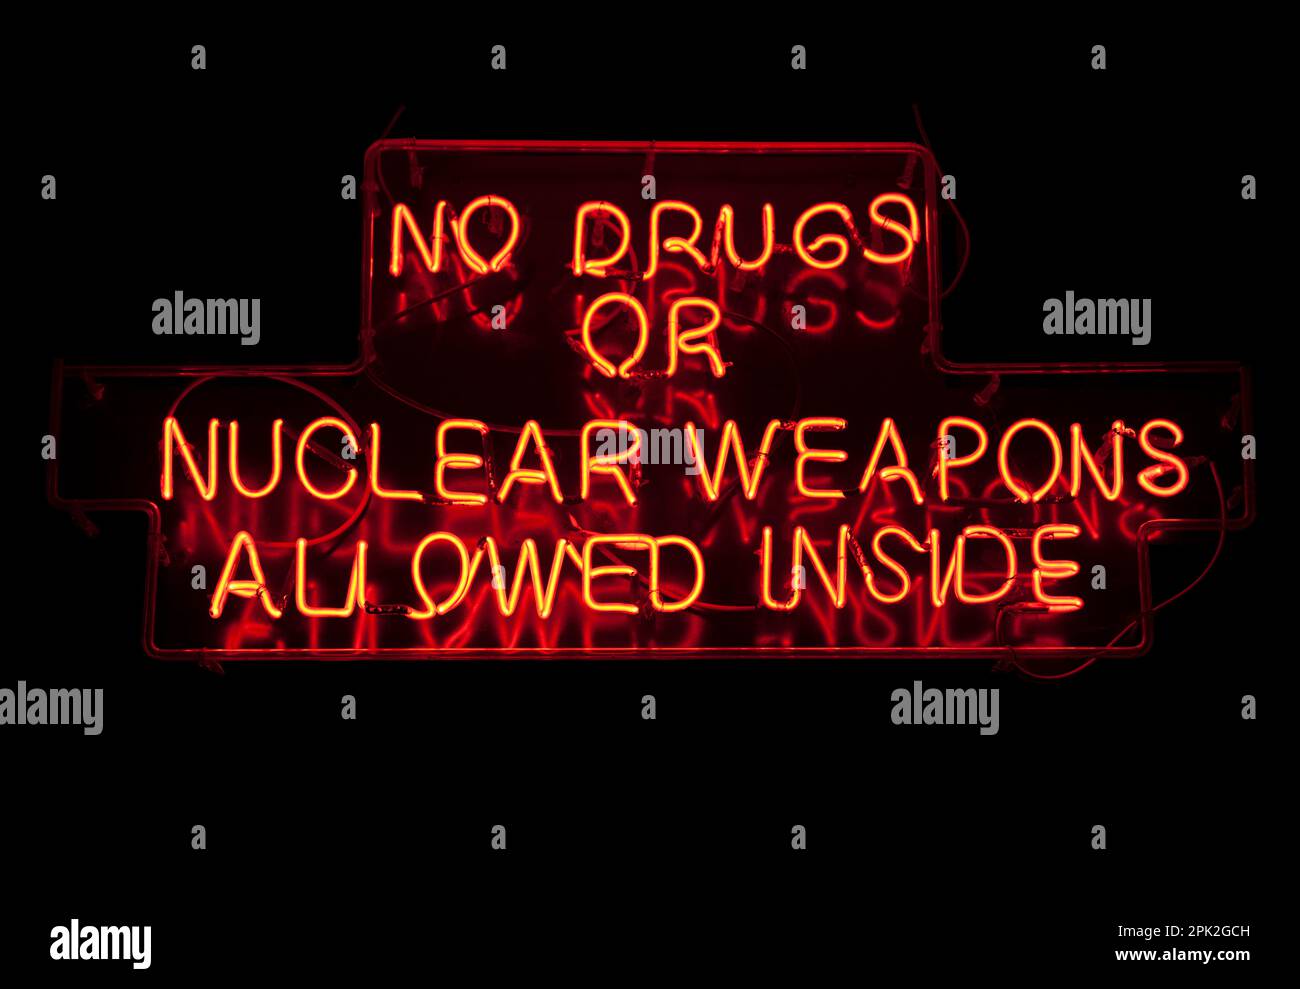 Ein lustiges Neonlicht in Form des Warnhinweises: "Keine Drogen oder Atomwaffen dürfen hinein". Stockfoto